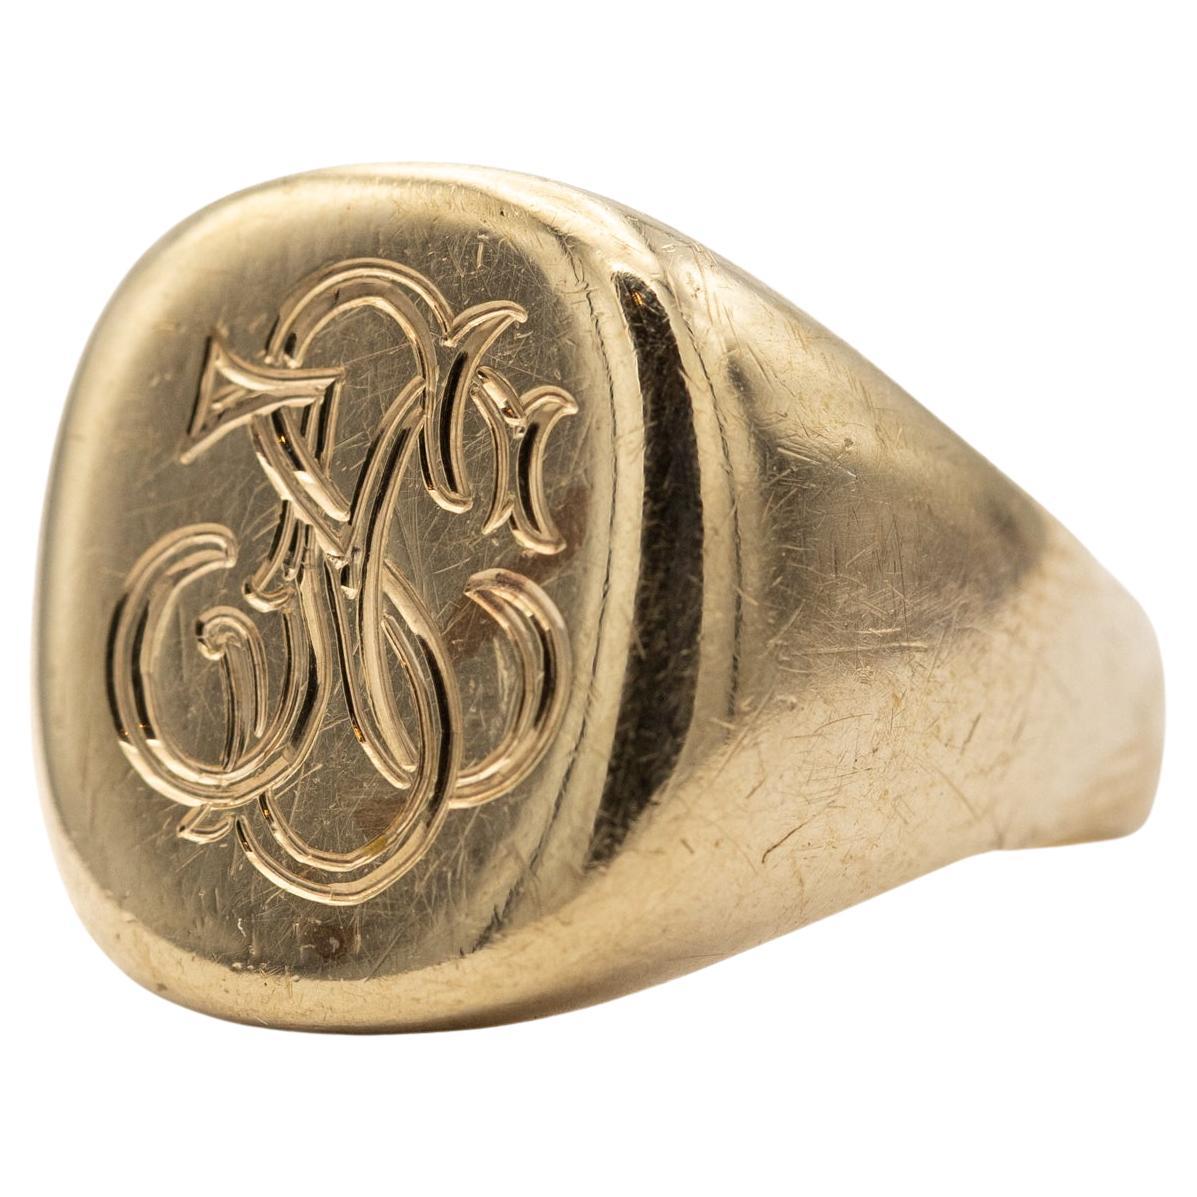 9k estate Initials J C S ring - letter signet monogram - Intaglio gentleman ring